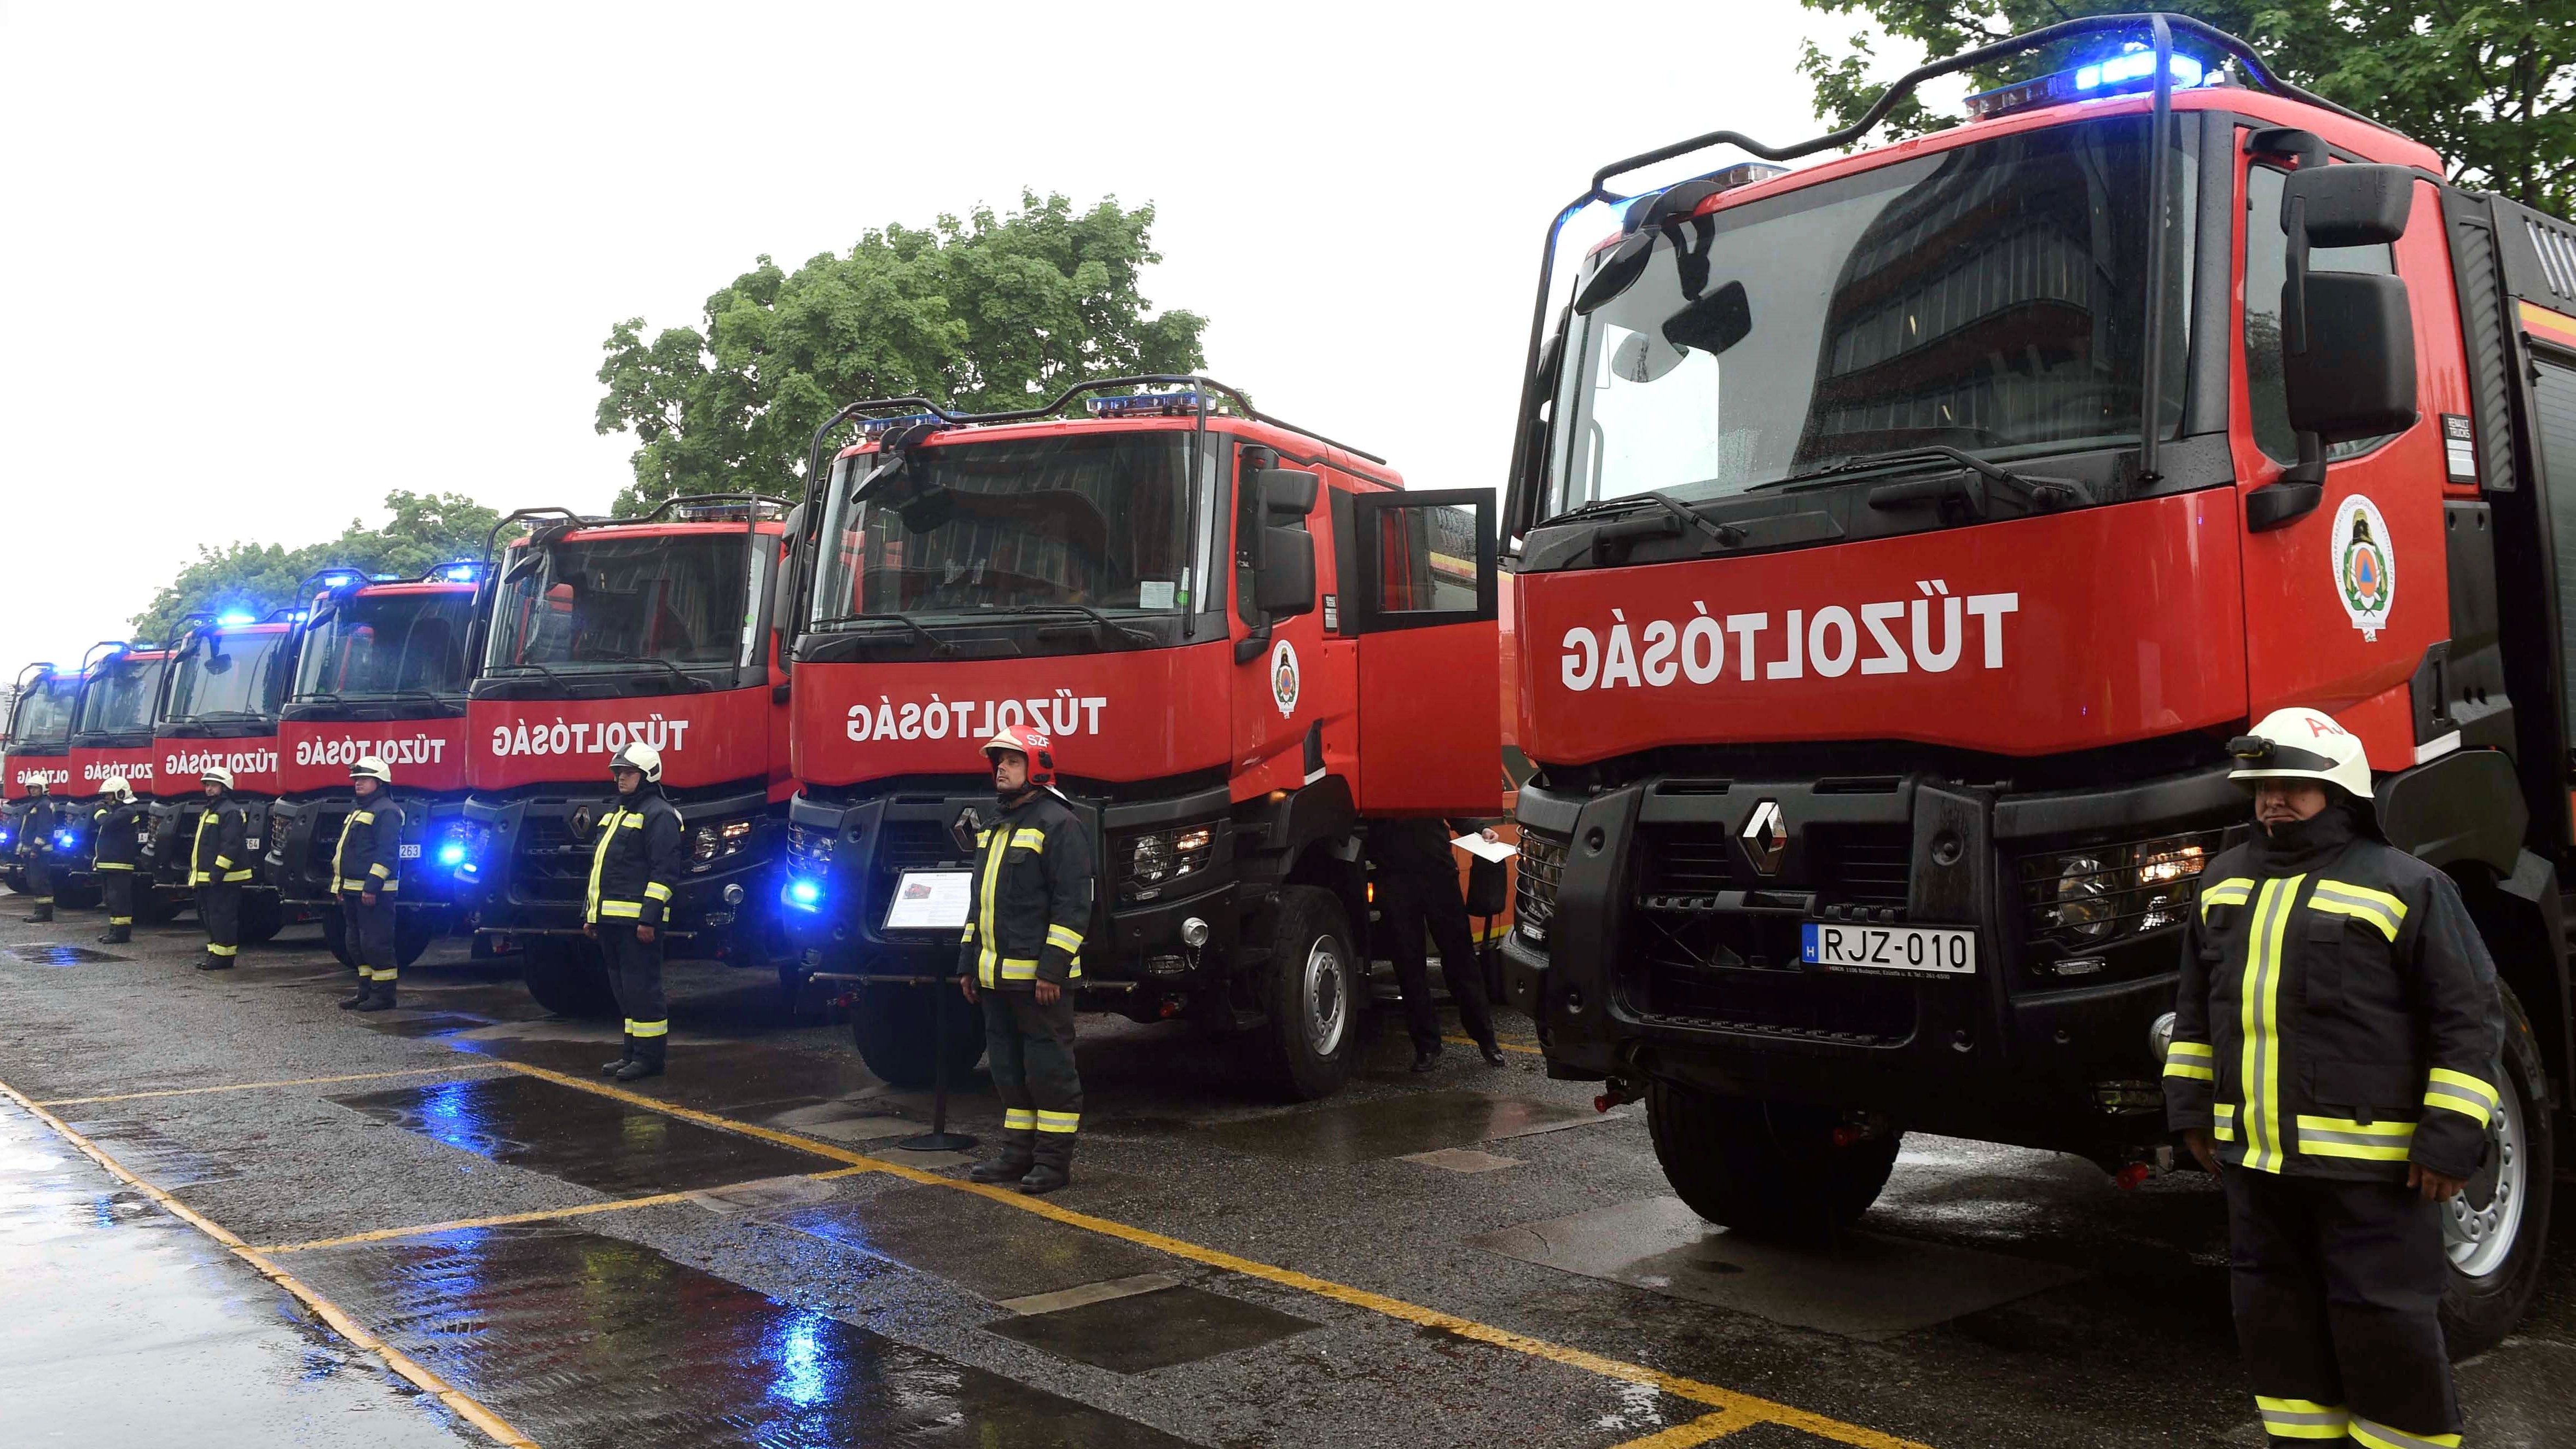 Az Országos Katasztrófavédelmi Főigazgatóság új tűzoltóautóinak átadása a szervezet Mogyoródi úti épületének udvarán, Budapesten 2019. május 9-én